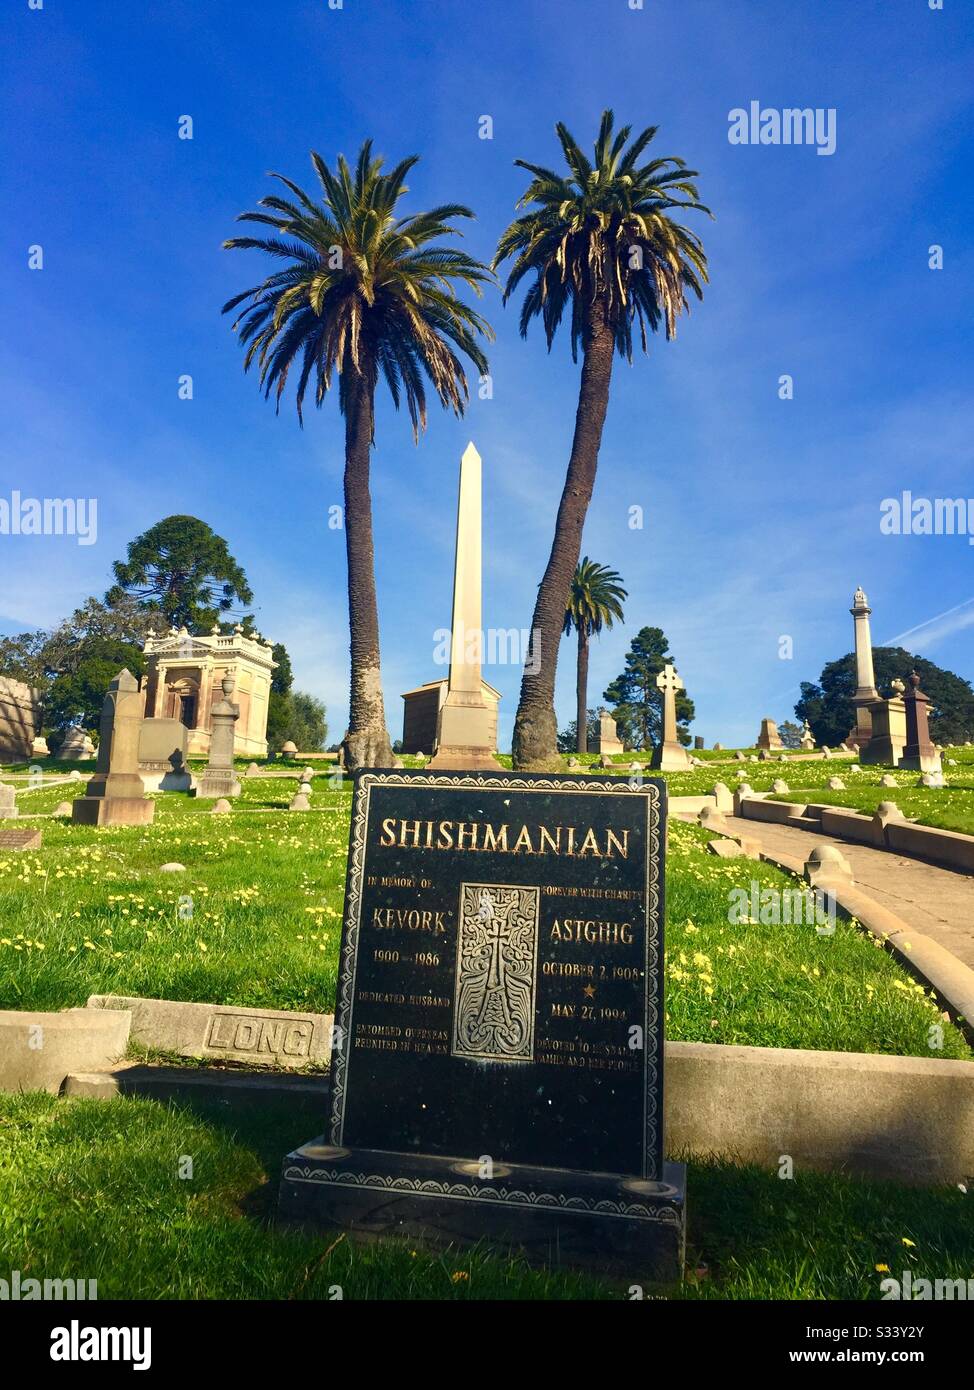 Weißer Obelisk-Grabmarker zwischen zwei Palmen. Kopfstein mit Namen Shishmanian, Kevork, Astghig. Gruft, Gräber, Gräber. Mountain View Cemetery, Oakland, Kalifornien. Stockfoto